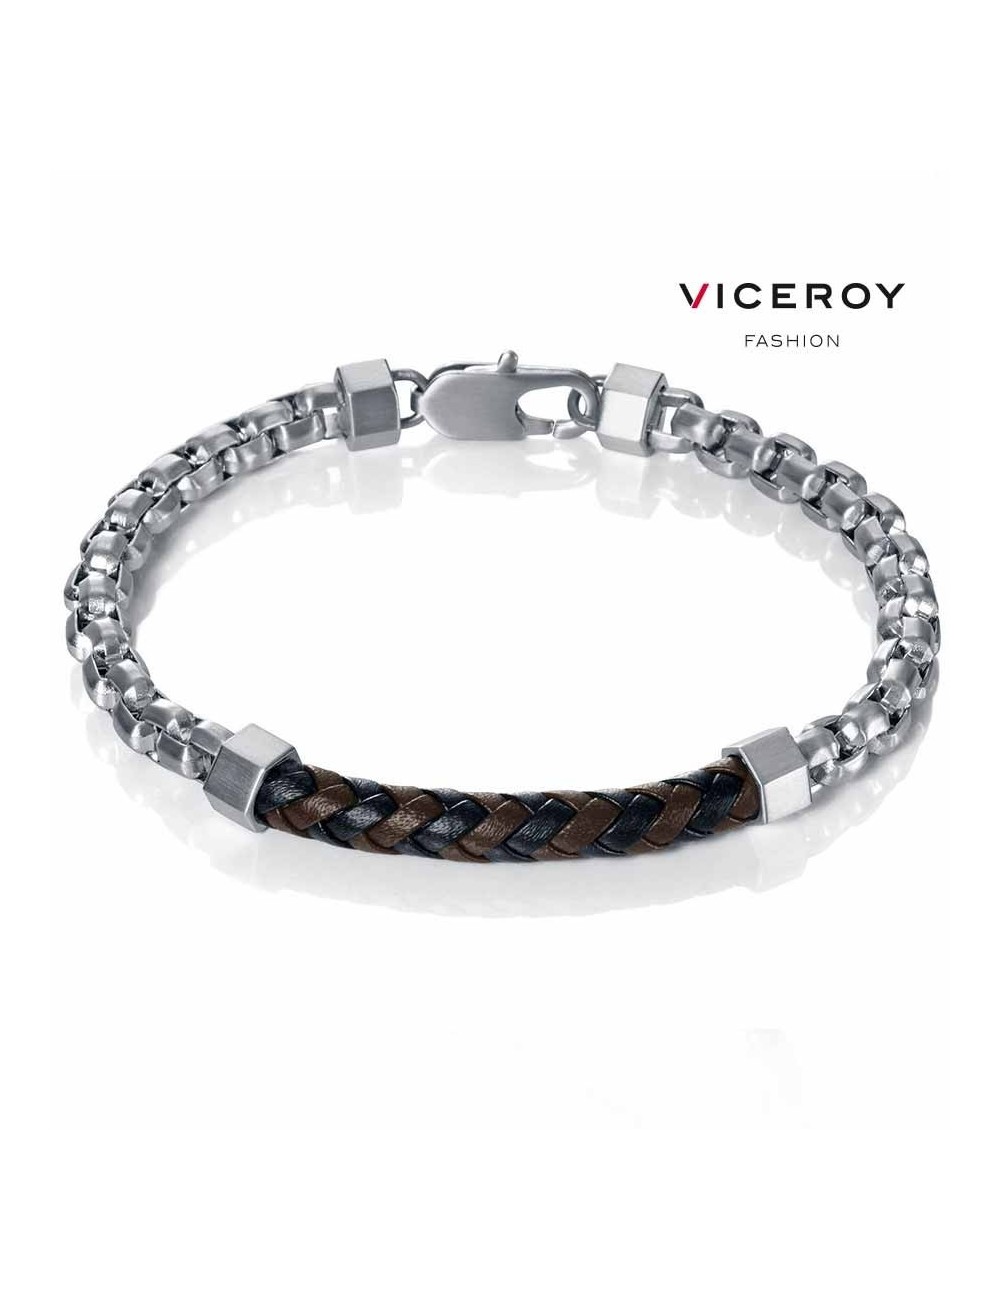 pulsera-viceroy-fashion-eslabones-acero-cuero-15001p01010